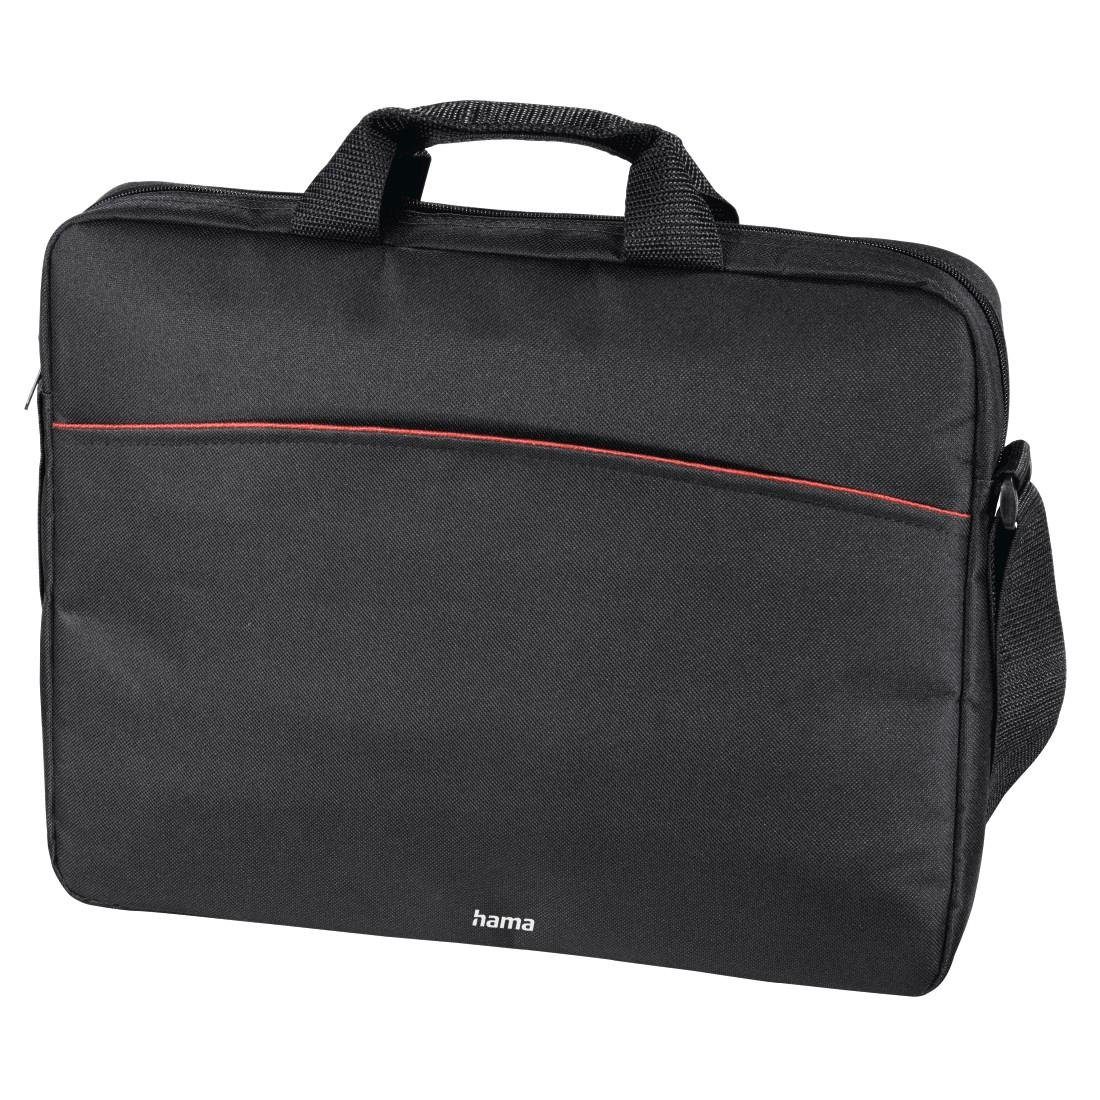 Hama Laptoptasche Laptop Tasche bis (15,6), cm 40 schwarz